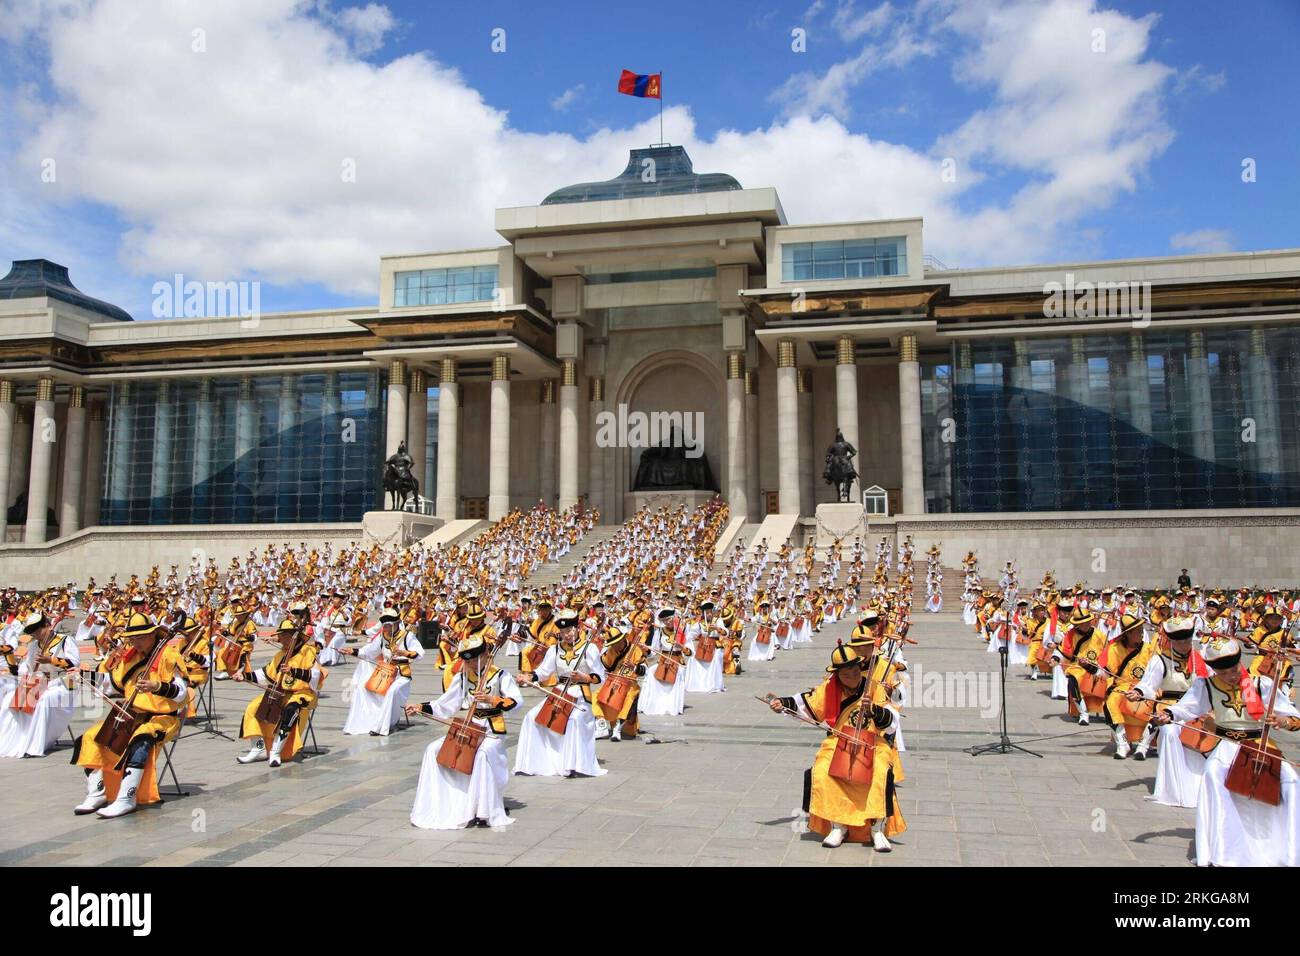 Bildnummer: 55571558 Datum: 05.07.2011 Copyright: imago/Xinhua (110705) -- ULAN BATOR, 5. Juli 2011 (Xinhua) -- Foto zeigt eine große traditionelle Morin-Khuur-Performance am Vorabend des mongolischen Naadam-Festivals zum Nationalfeiertag auf dem Sukhbaatar-Platz in Ulan Bator, Mongolei, 5. Juli 2011. Neunhundertneunundneunzig Morin-Khuur-Spieler aus der Provinz Zavkhan präsentierten am Dienstag eine wunderbare Leistung. (Xinhua/Huang Longjie)(wn) MONGOLEI-MORIN KHUUR-PERFORMANCE PUBLICATIONxNOTxINxCHN Gesellschaft Tradition Musik mongolische Pferdekopfgeige Nationalfeiertag x0x xst Uraufführung 2011 que Stockfoto